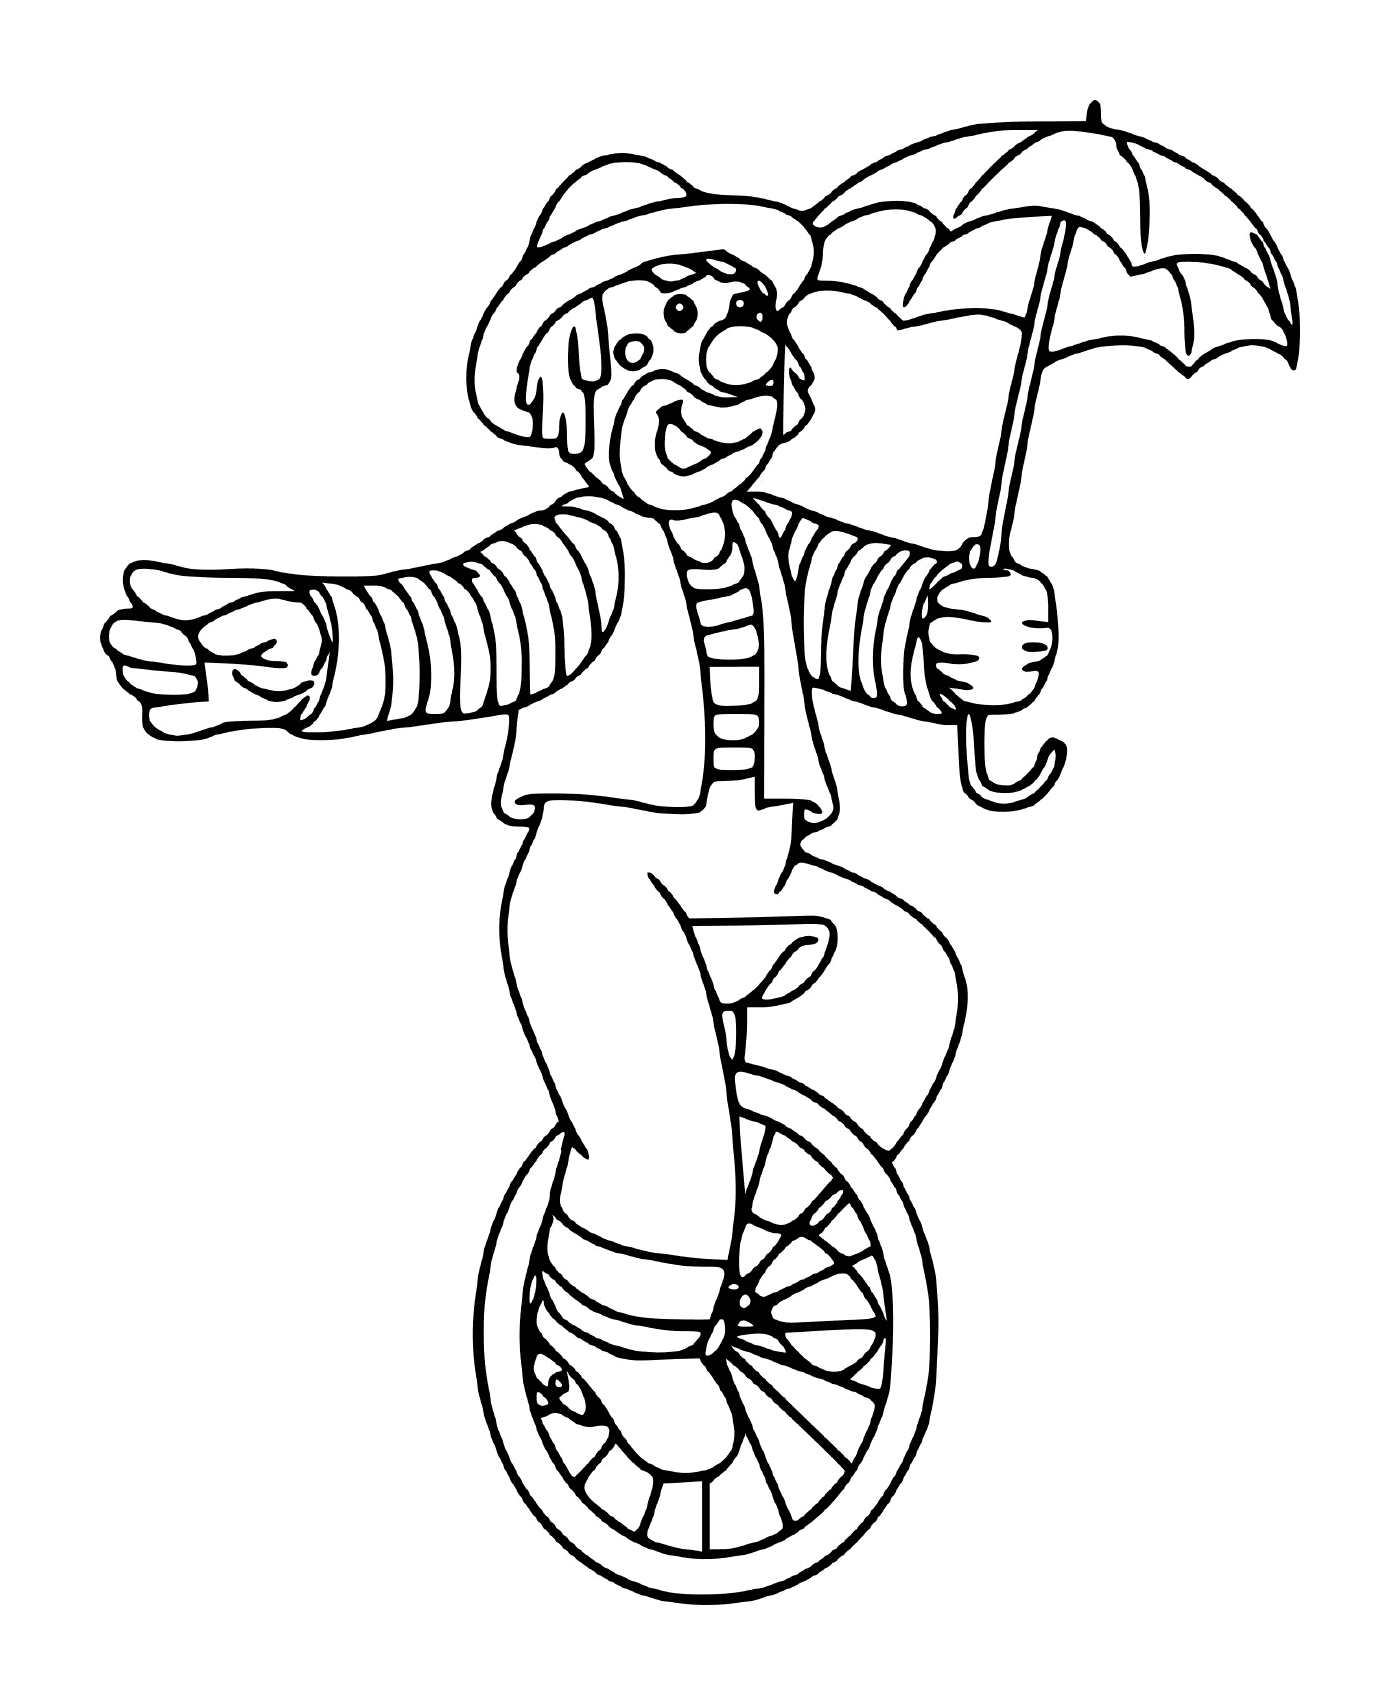  Circus clown balanced on a wheel with an umbrella 